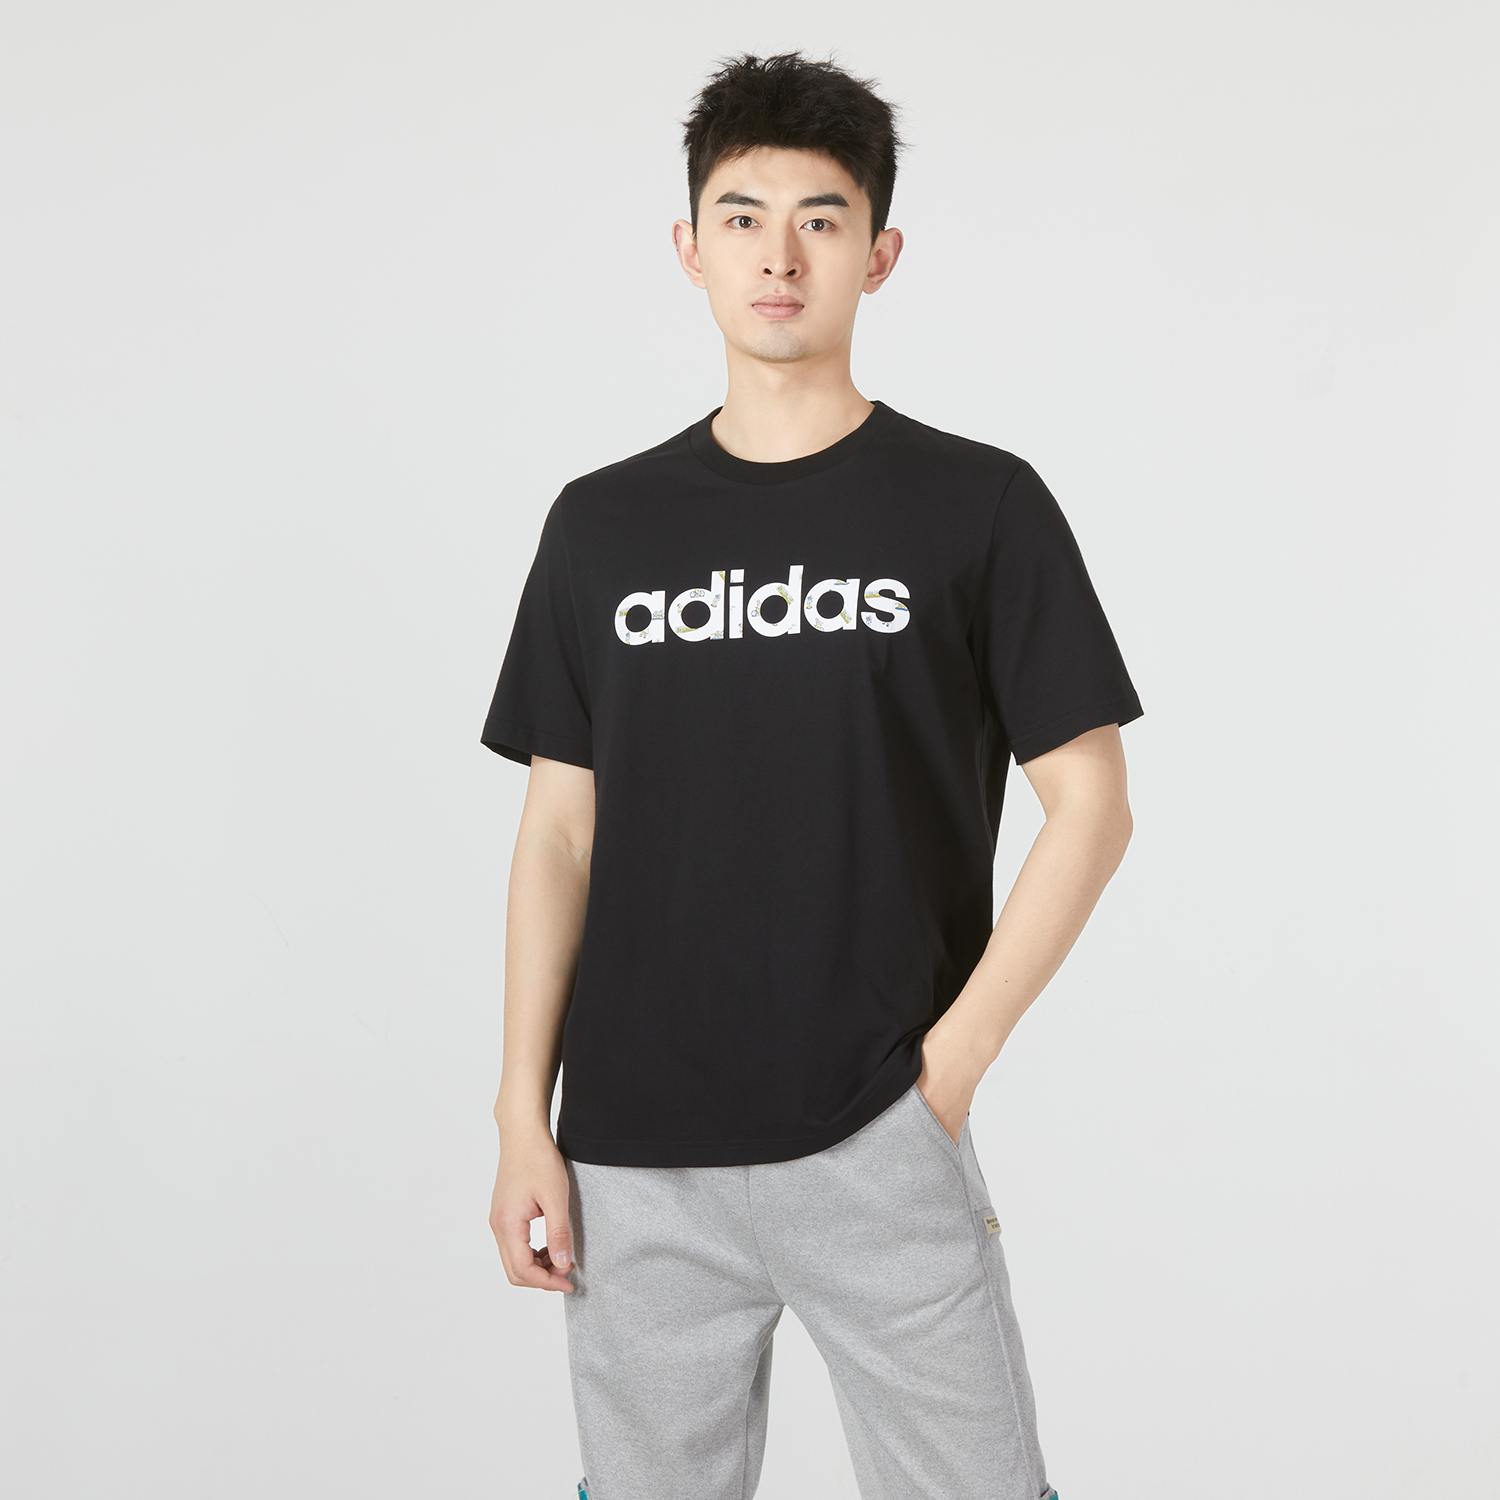 Adidas | M CE GR TEE 2男士运动休闲短袖T恤商品图片,5.6折, 包邮包税